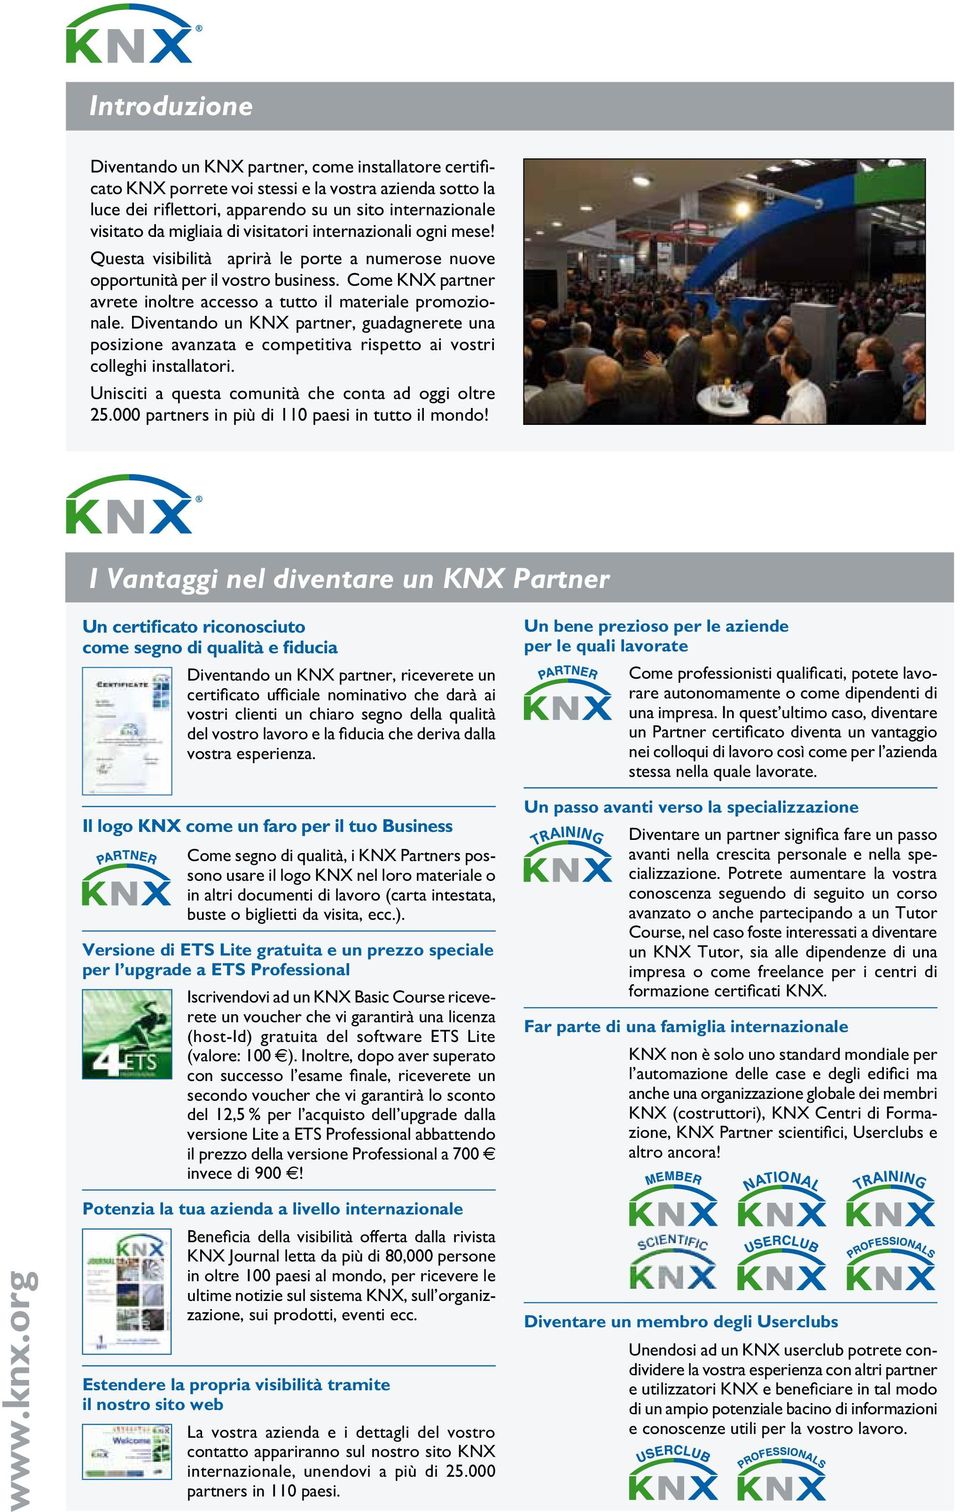 Come KNX partner avrete inoltre accesso a tutto il materiale promozionale. Diventando un KNX partner, guadagnerete una posizione avanzata e competitiva rispetto ai vostri colleghi installatori.